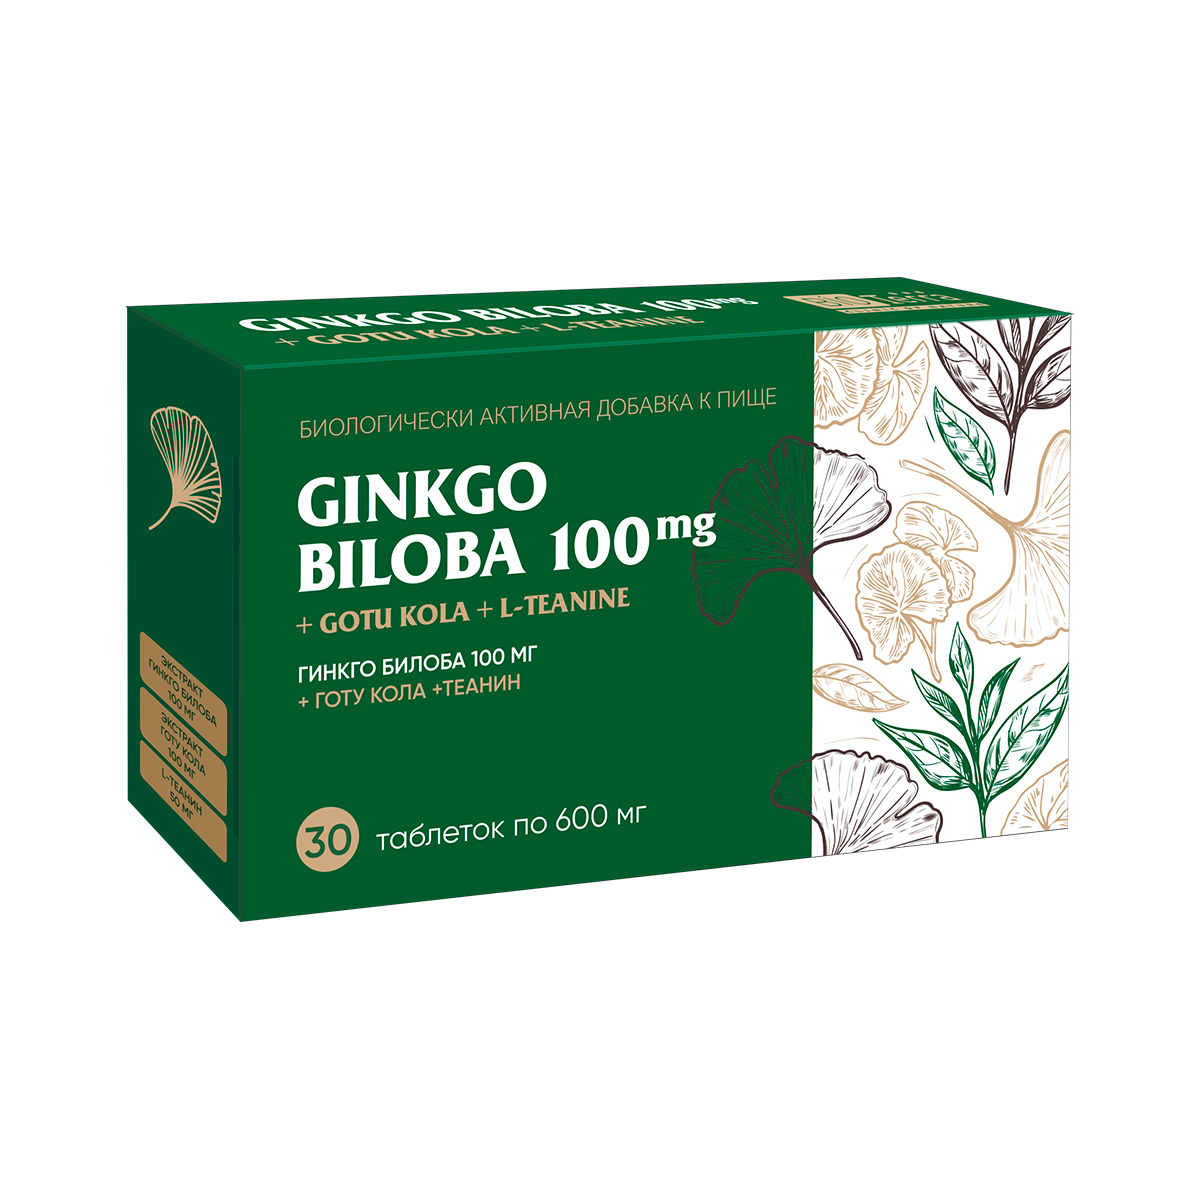 Гинкго билоба 100 мг+Готу кола+Теанин таблетки 600 мг 30 шт Биотерра